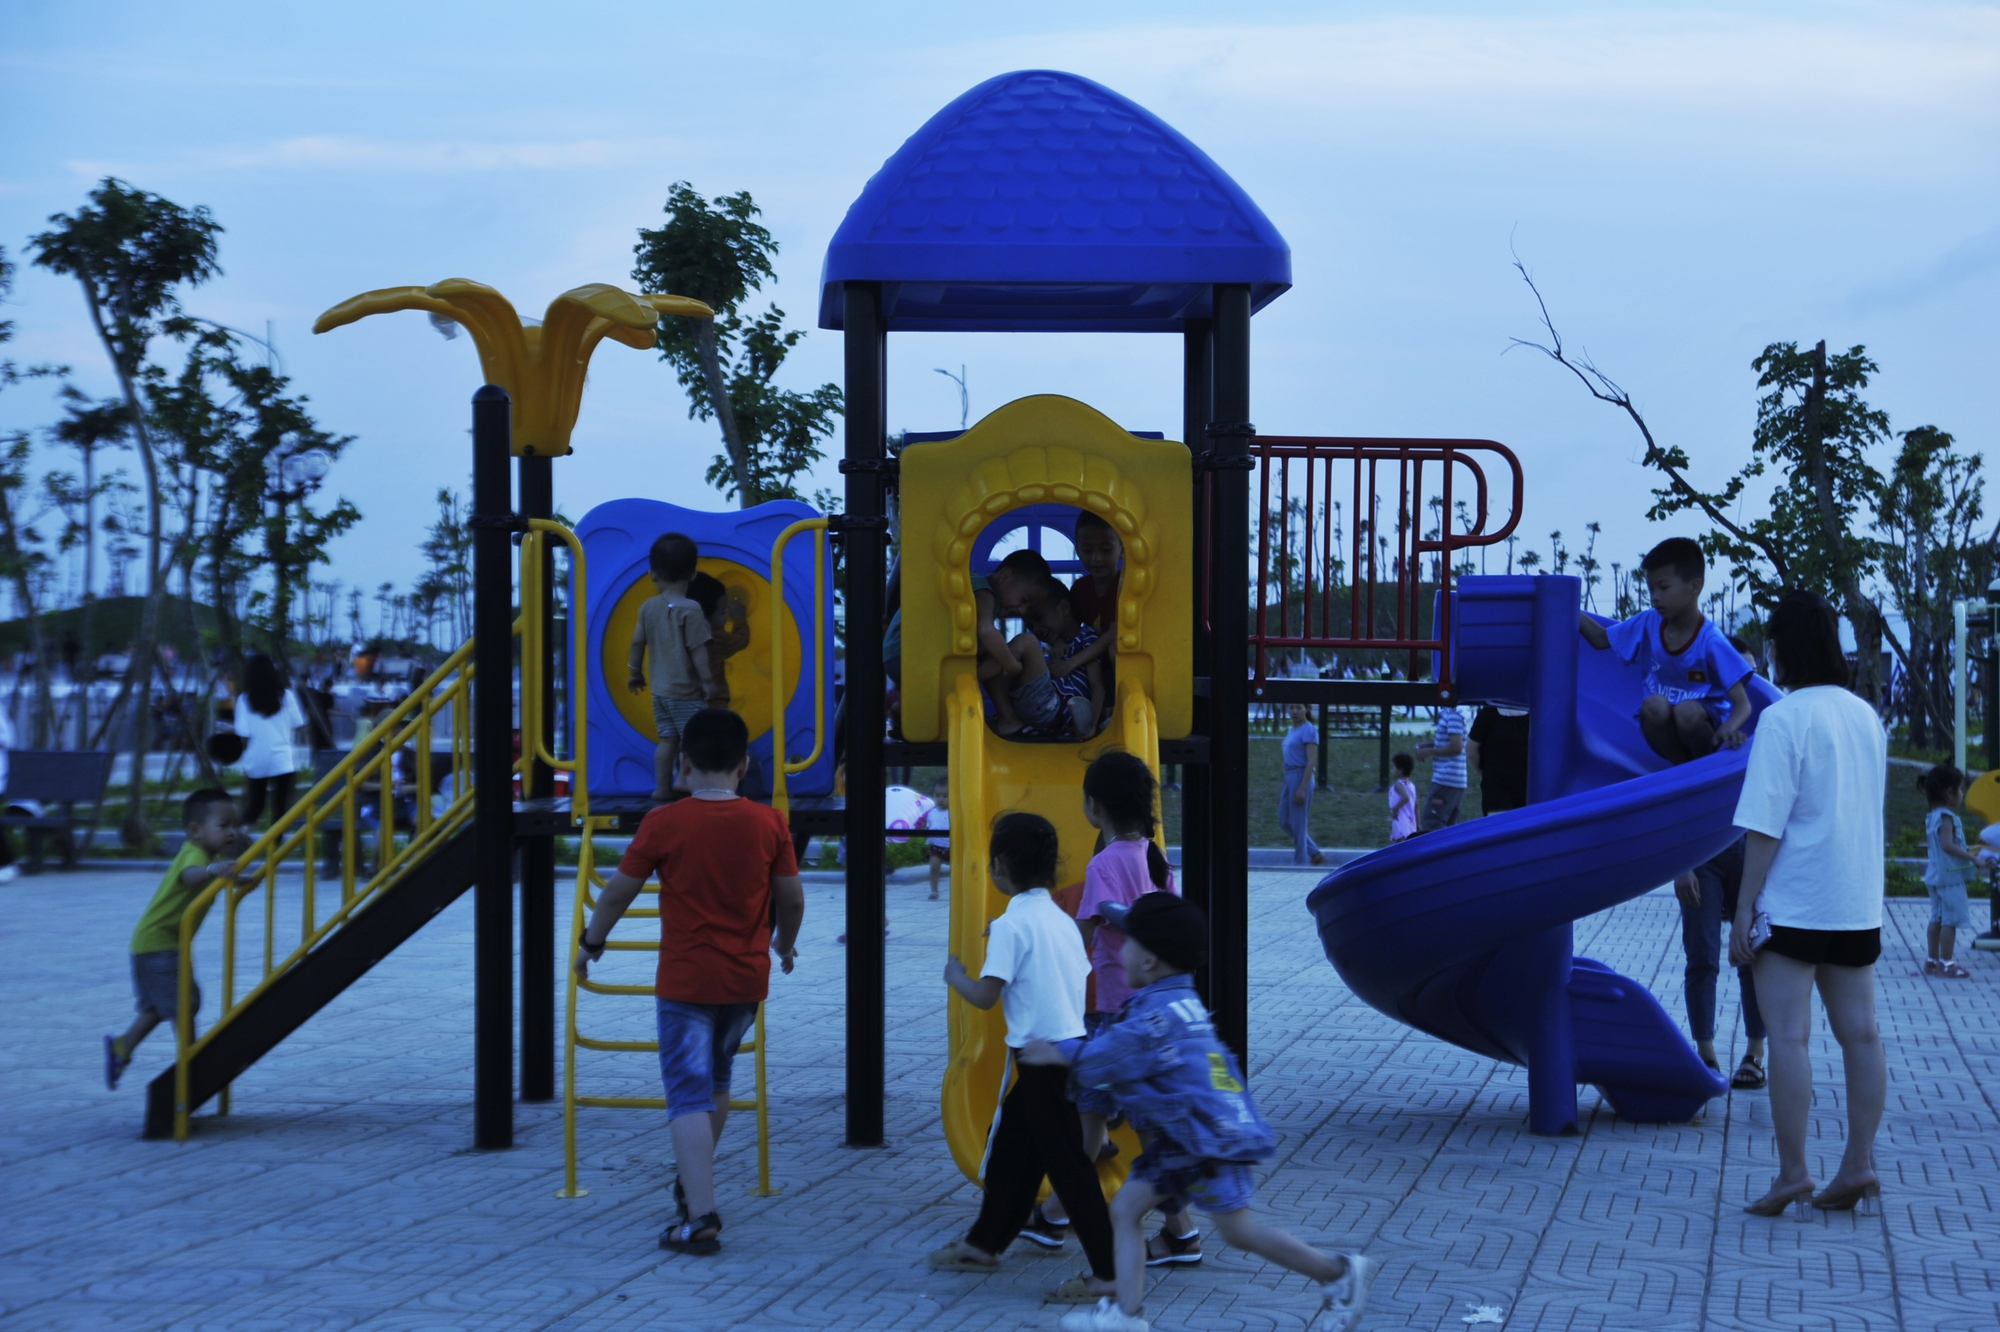 Công viên lúc nào cũng chật cứng người, trẻ em thì tham gia các trò chơi, người lớn thì trải nghiệm các thiết bị thể dục thể thao và ngắm cảnh.